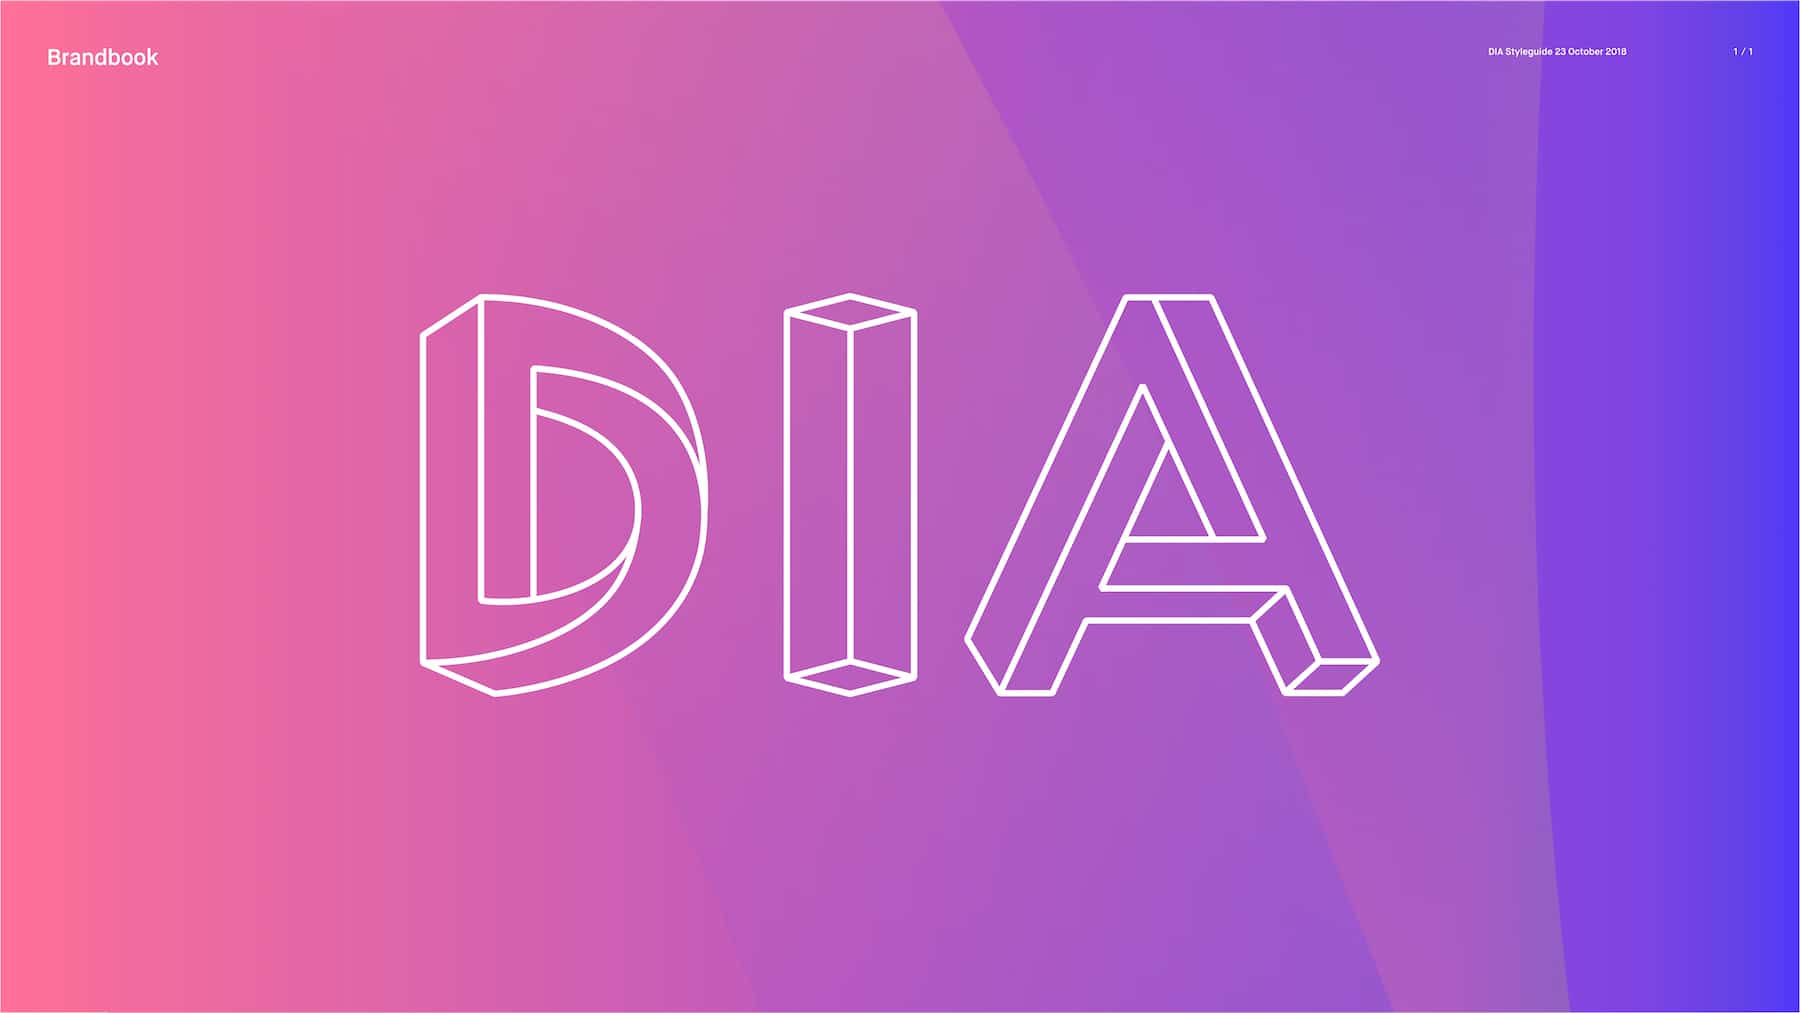 Digitales Branding für eine Crypto-Plattform - DIA 5